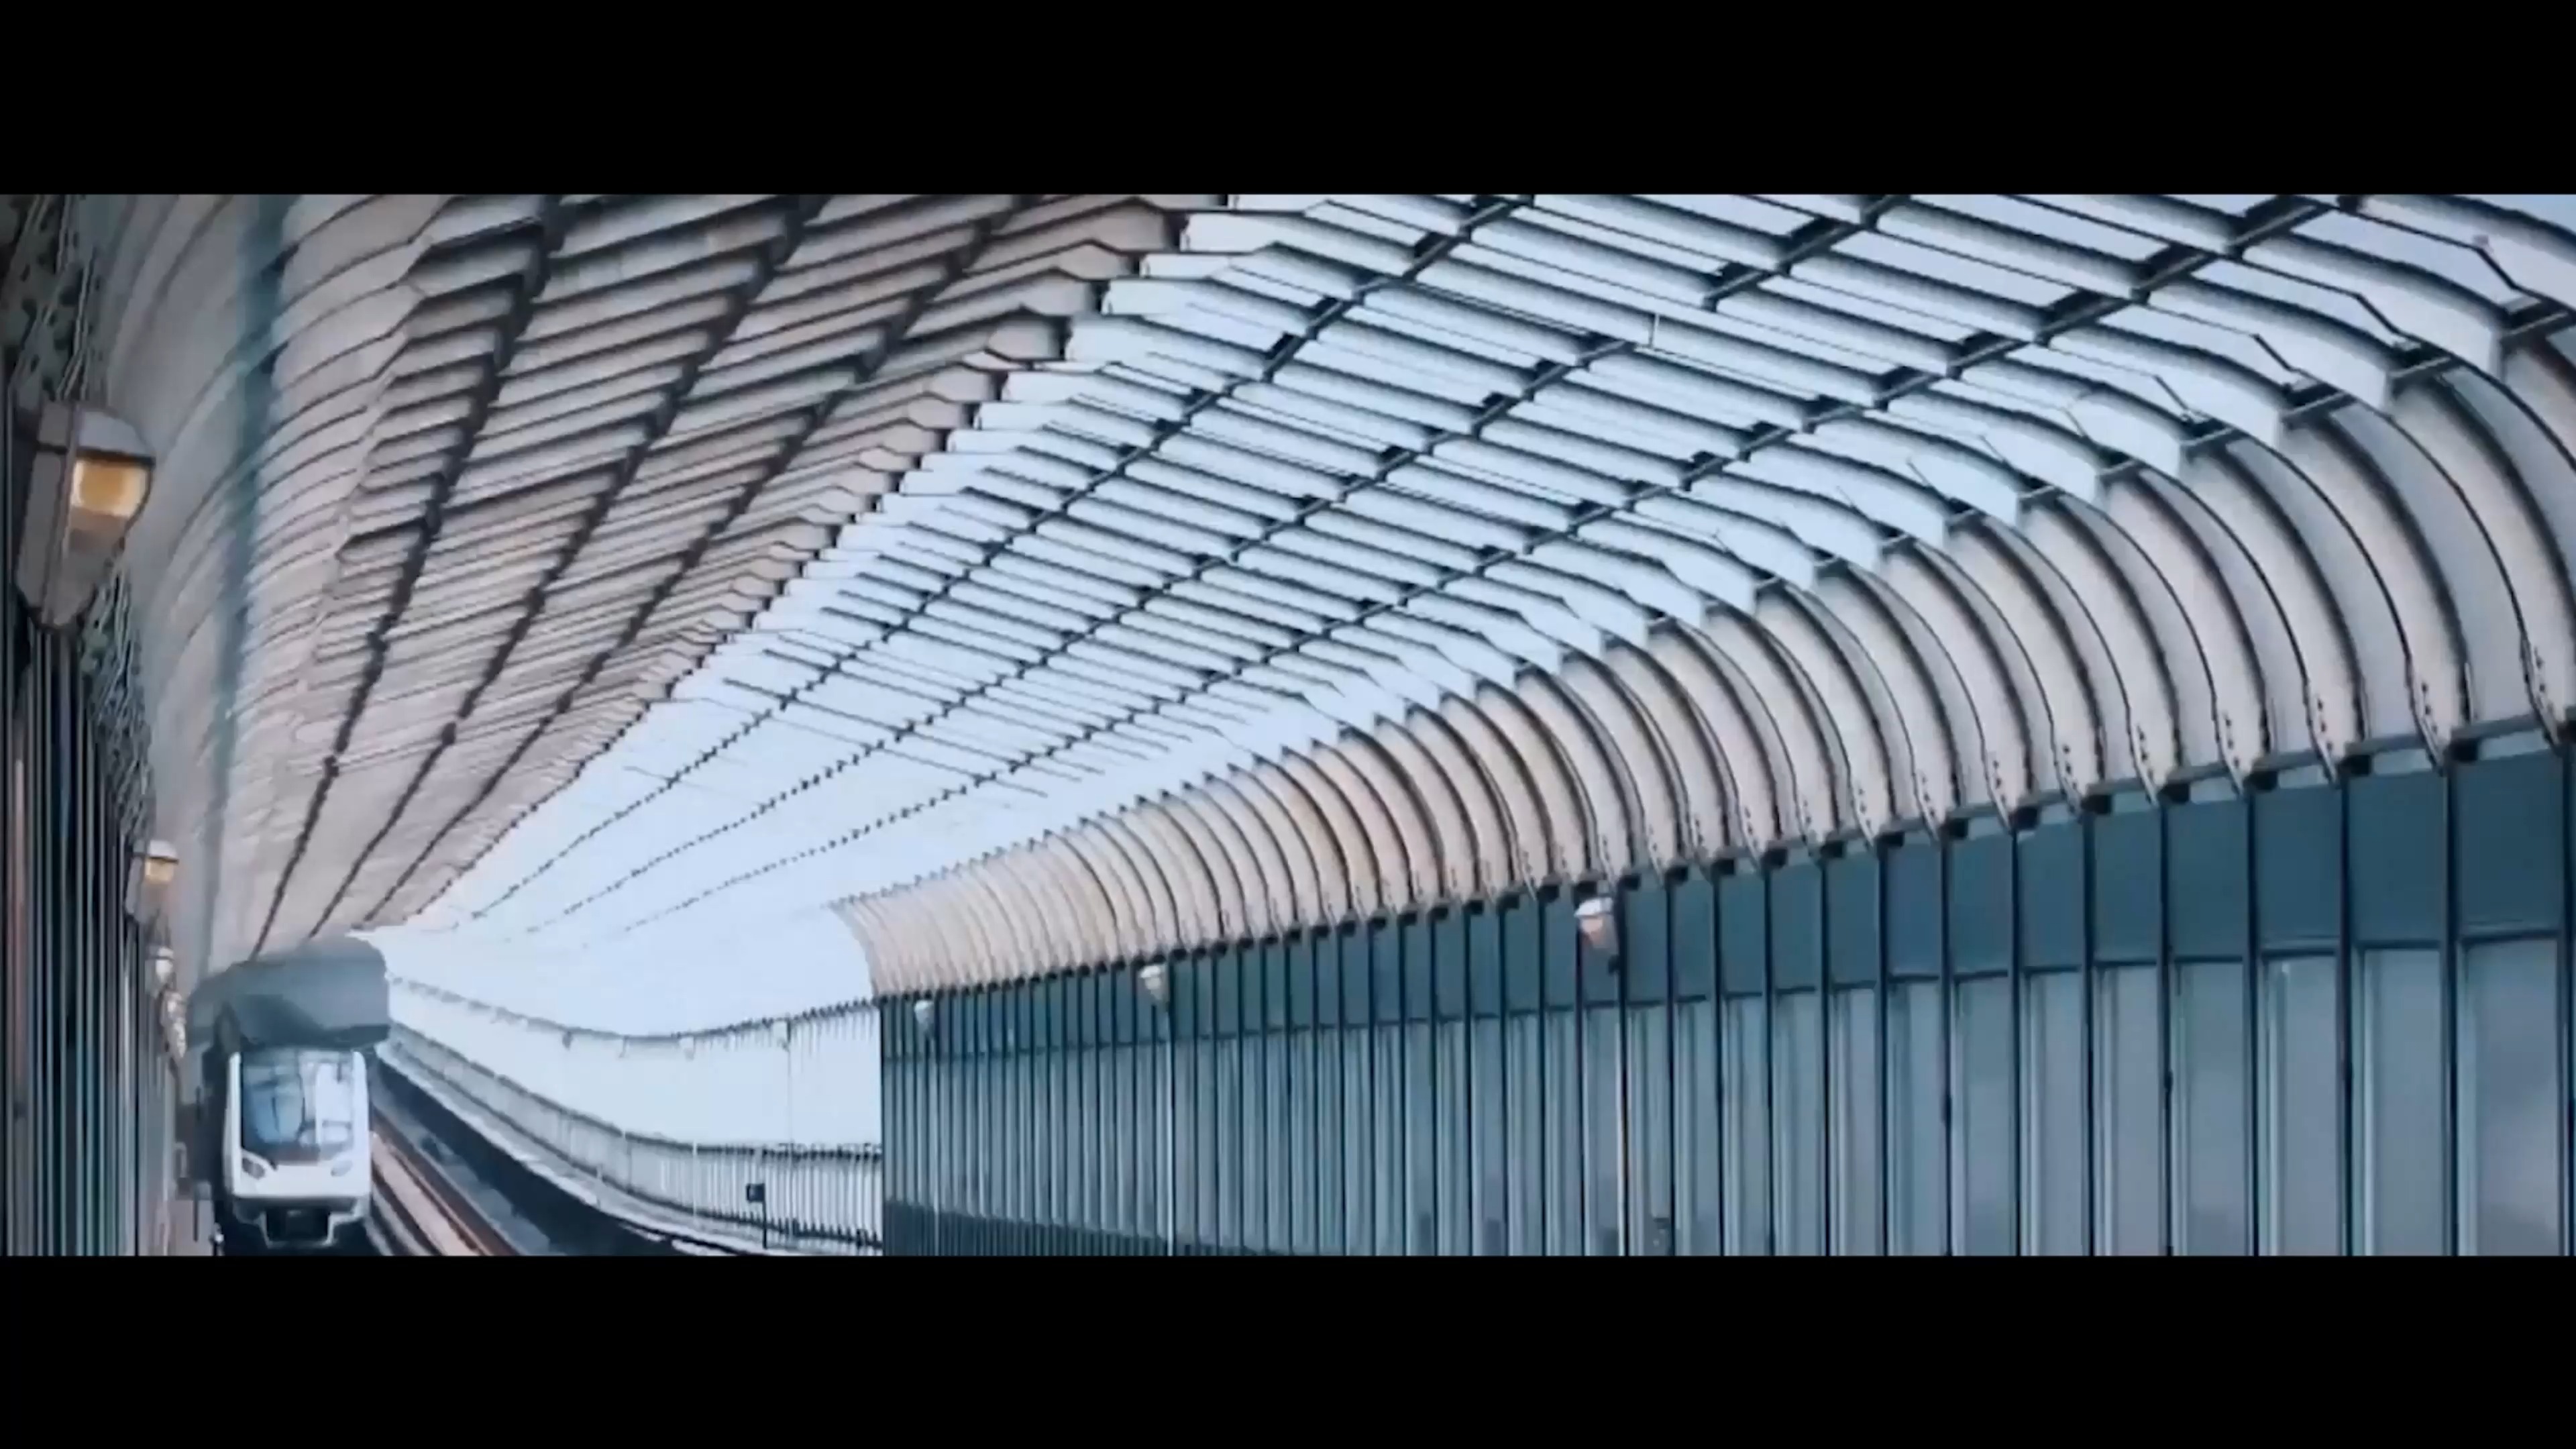 加拿大喜加漆 — 北京地铁梨园站工程案例欣赏